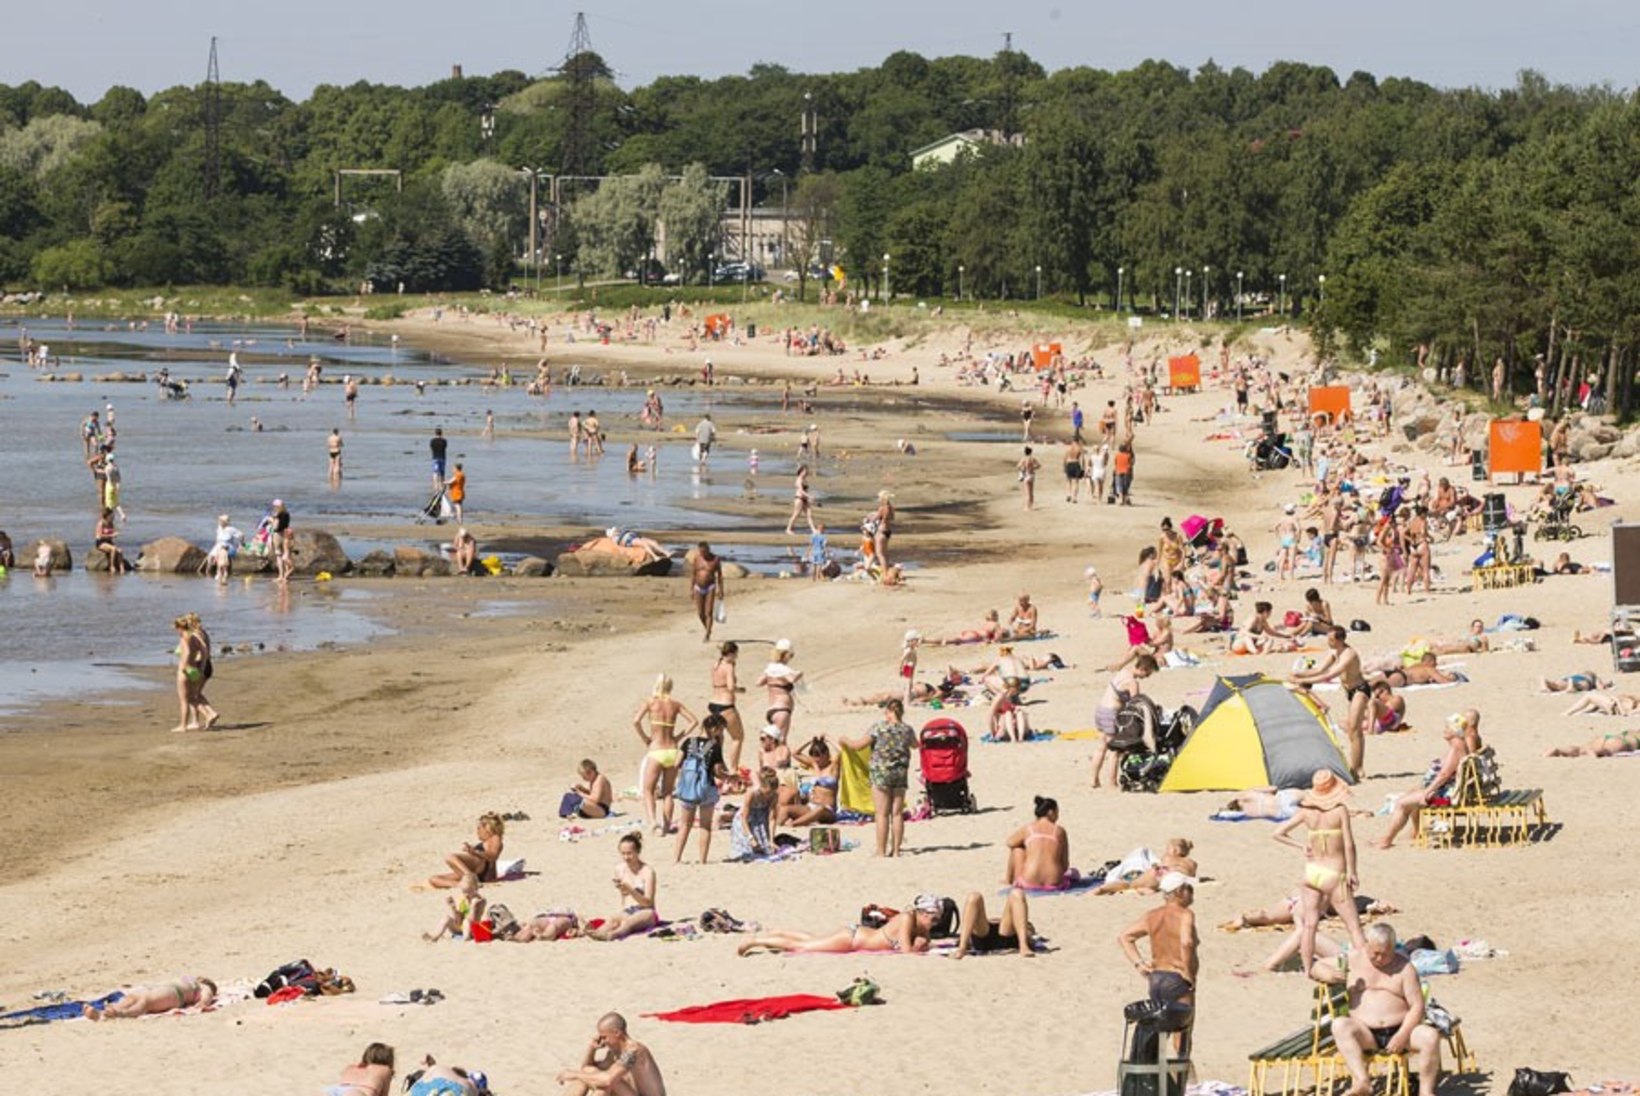 Lohusalu, Laulasmaa ja Stroomi ranna vees on toksilised vetikad!